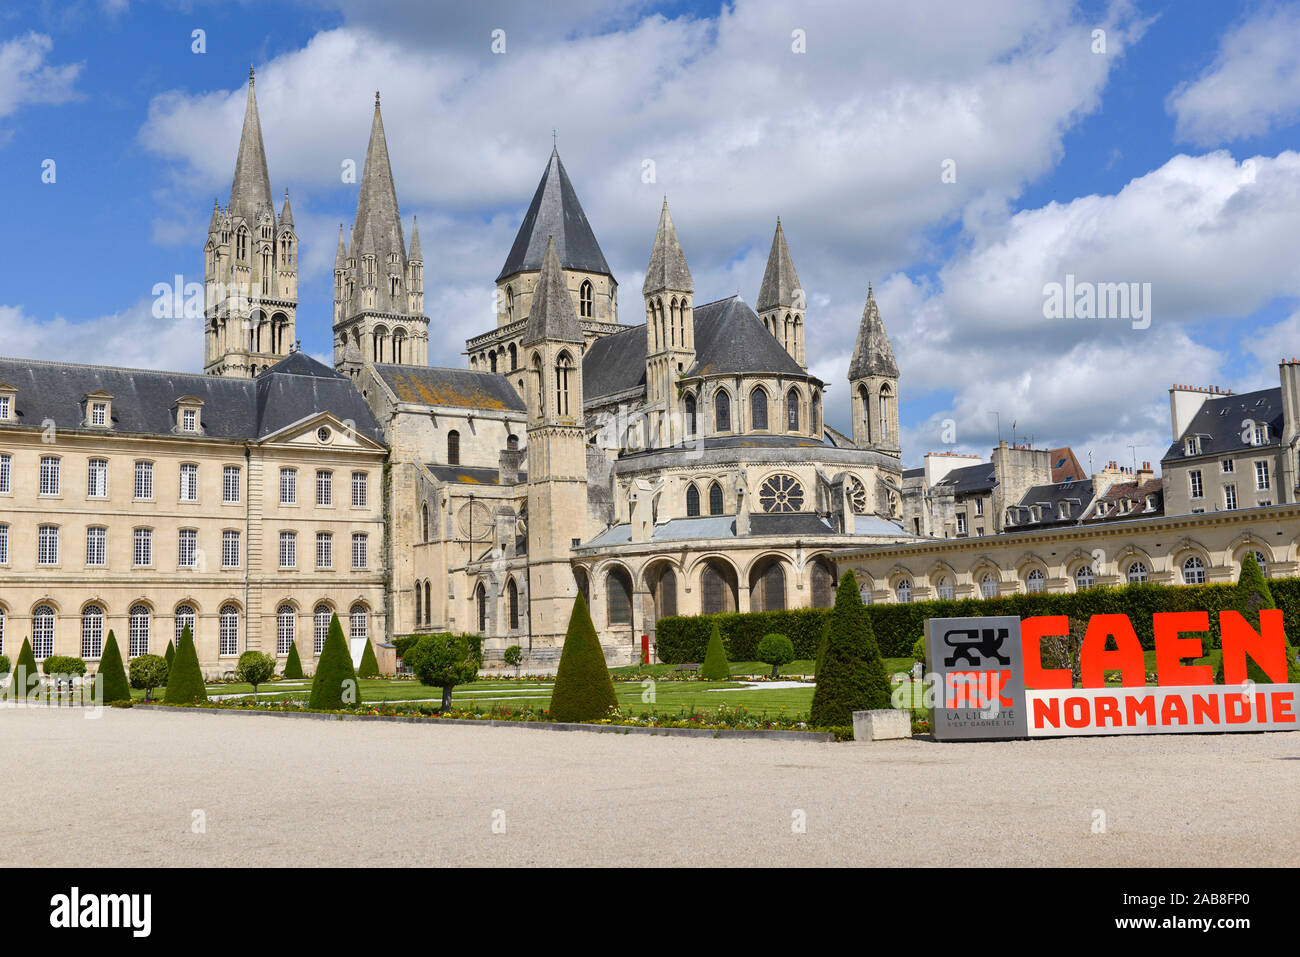 Caen (Normandie, nord-ouest de la France) : Men's Abbey (Abbaye-aux-Hommes"), maintenant transformé en un hôtel de ville. Façade et inscription "Normandie" Canne Banque D'Images